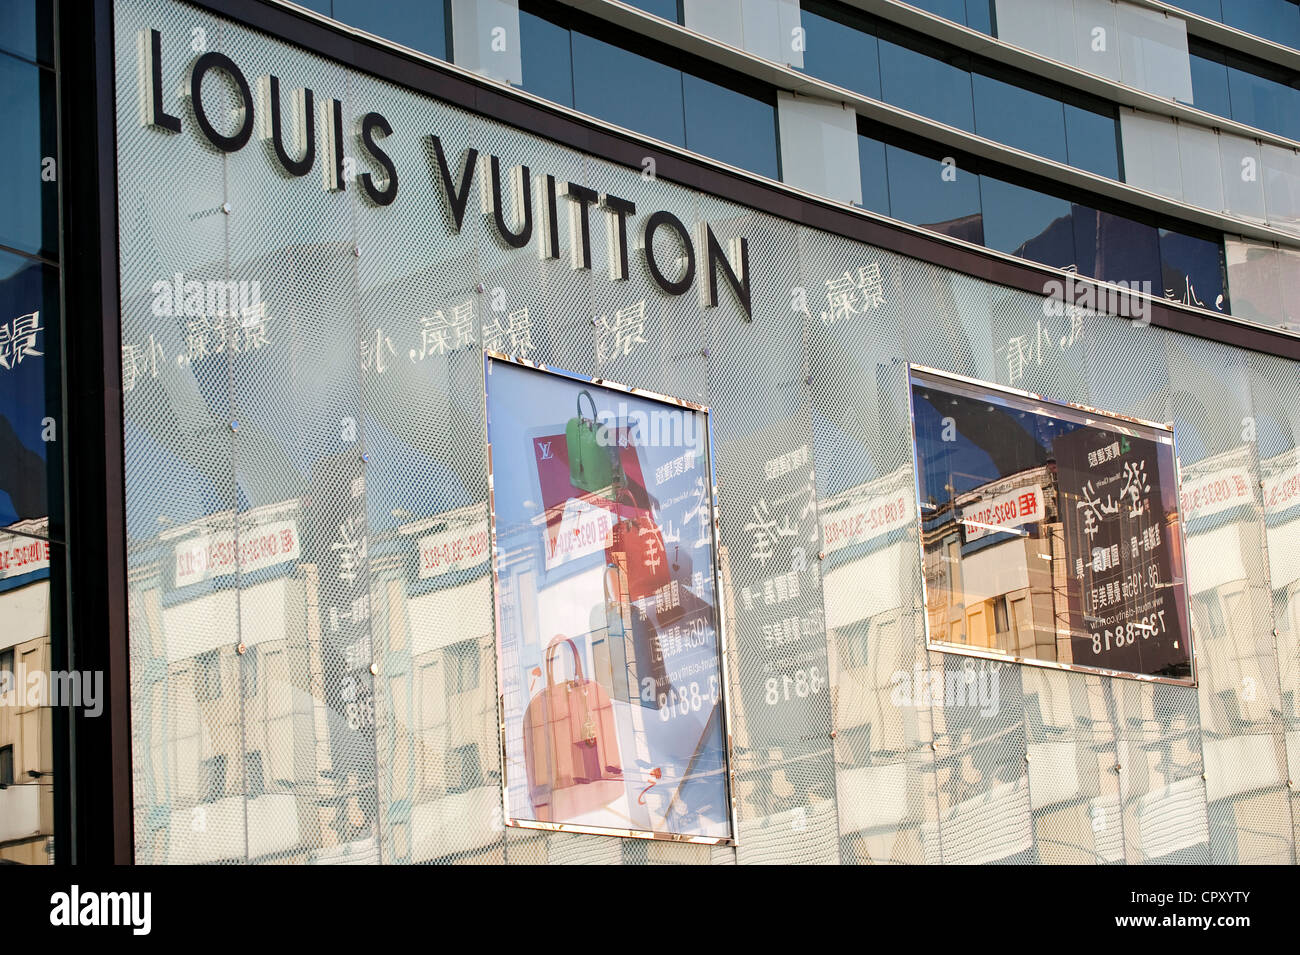 Yayoi Kusama Louis Vuitton - NY July 2012 via Beautiful Window Displays